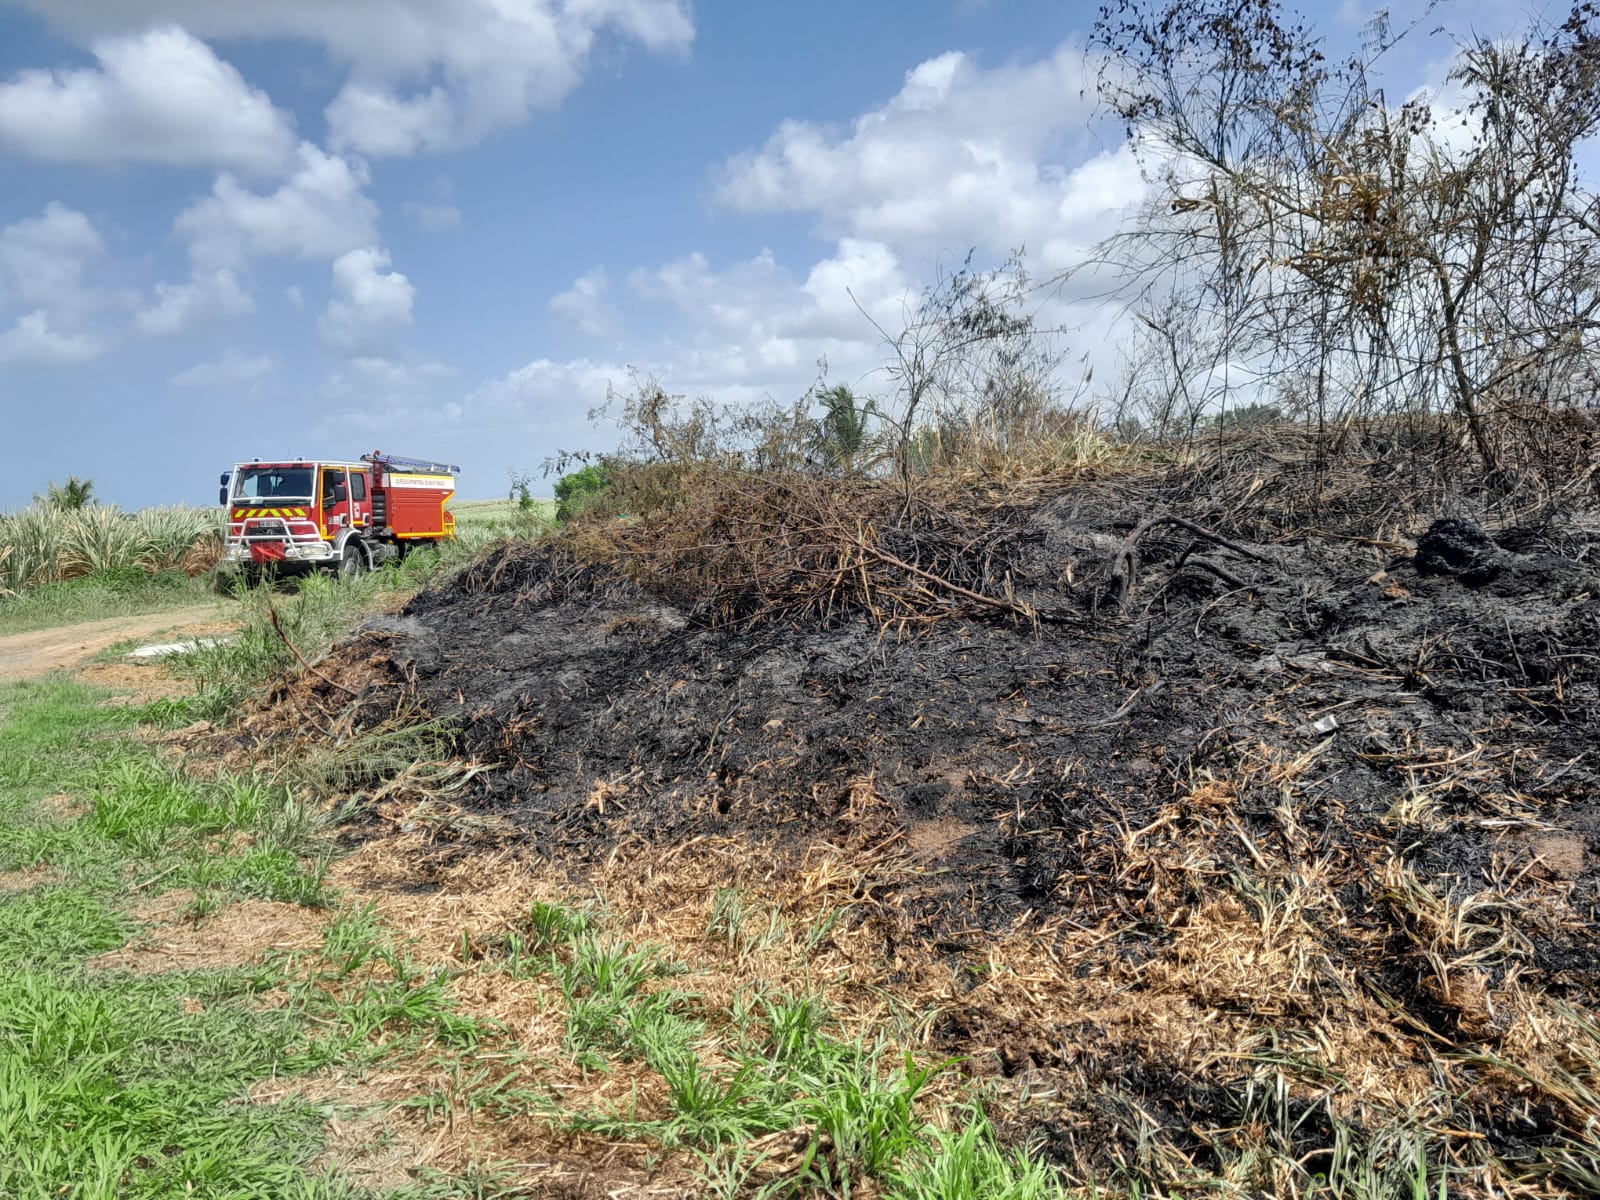     Trois hectares de broussailles partent en fumée à Rivière-Salée

